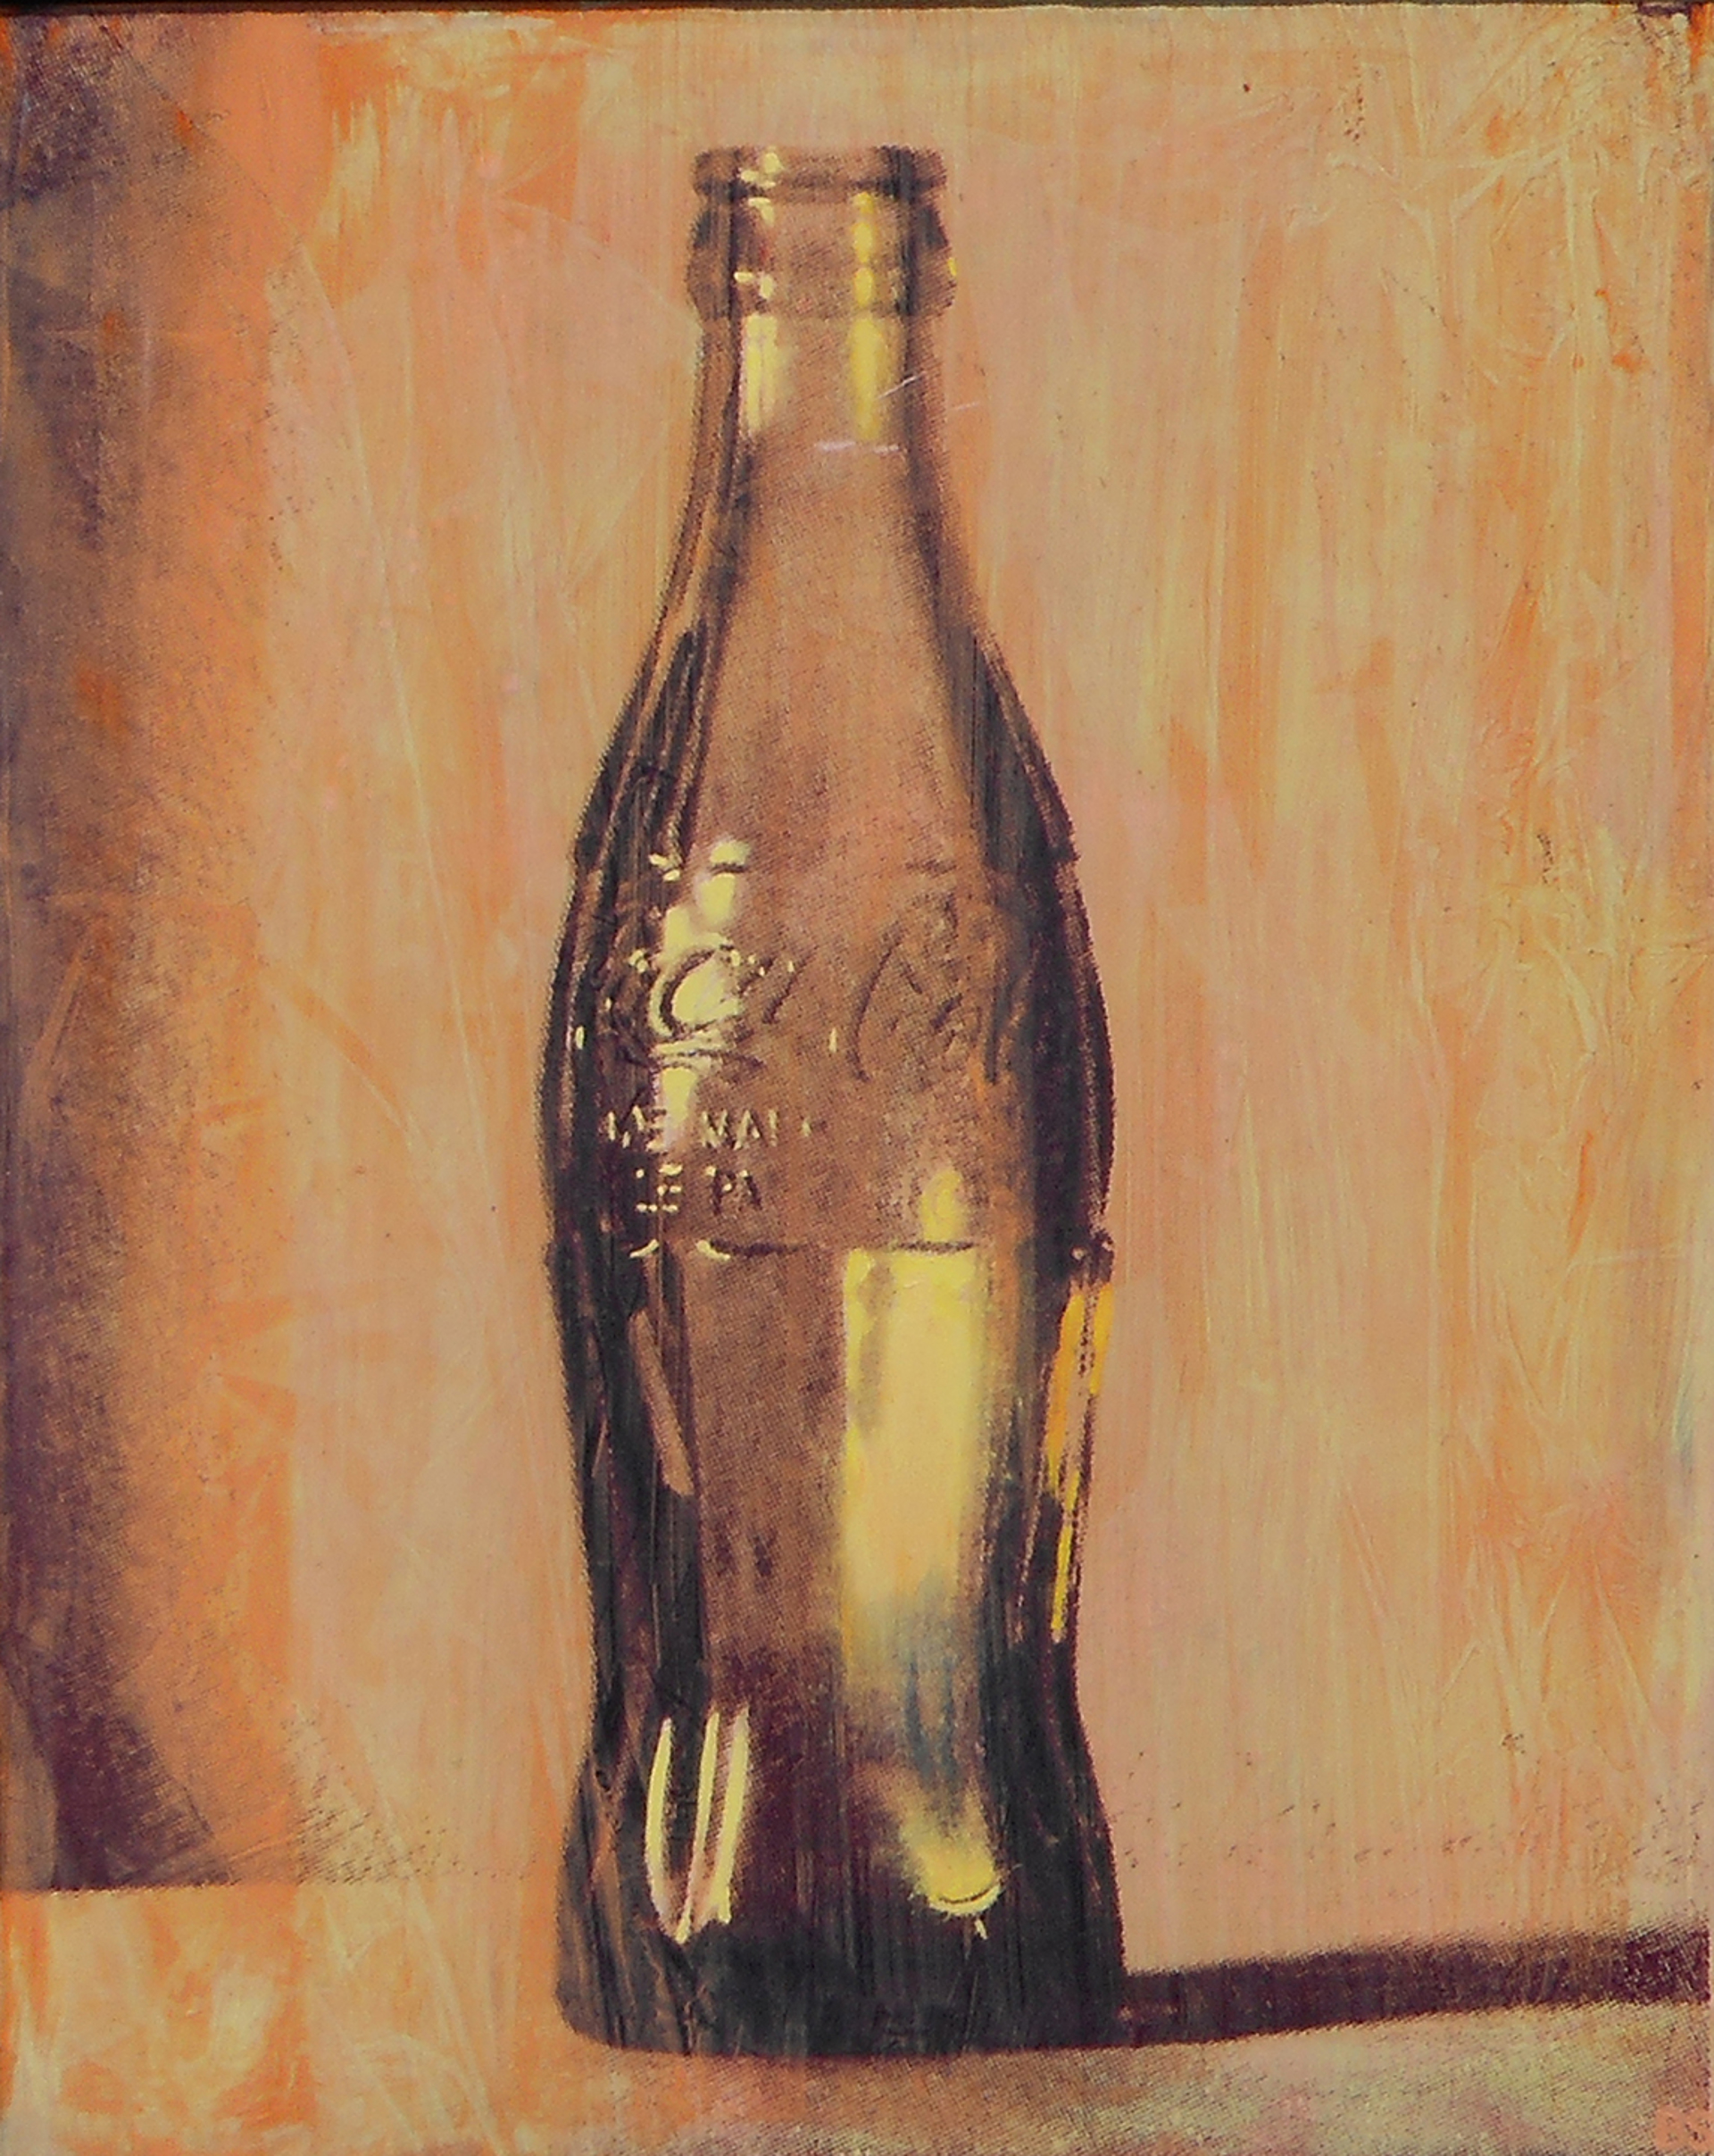 Coca Cola (Orange-Yellow) by Ben Steele